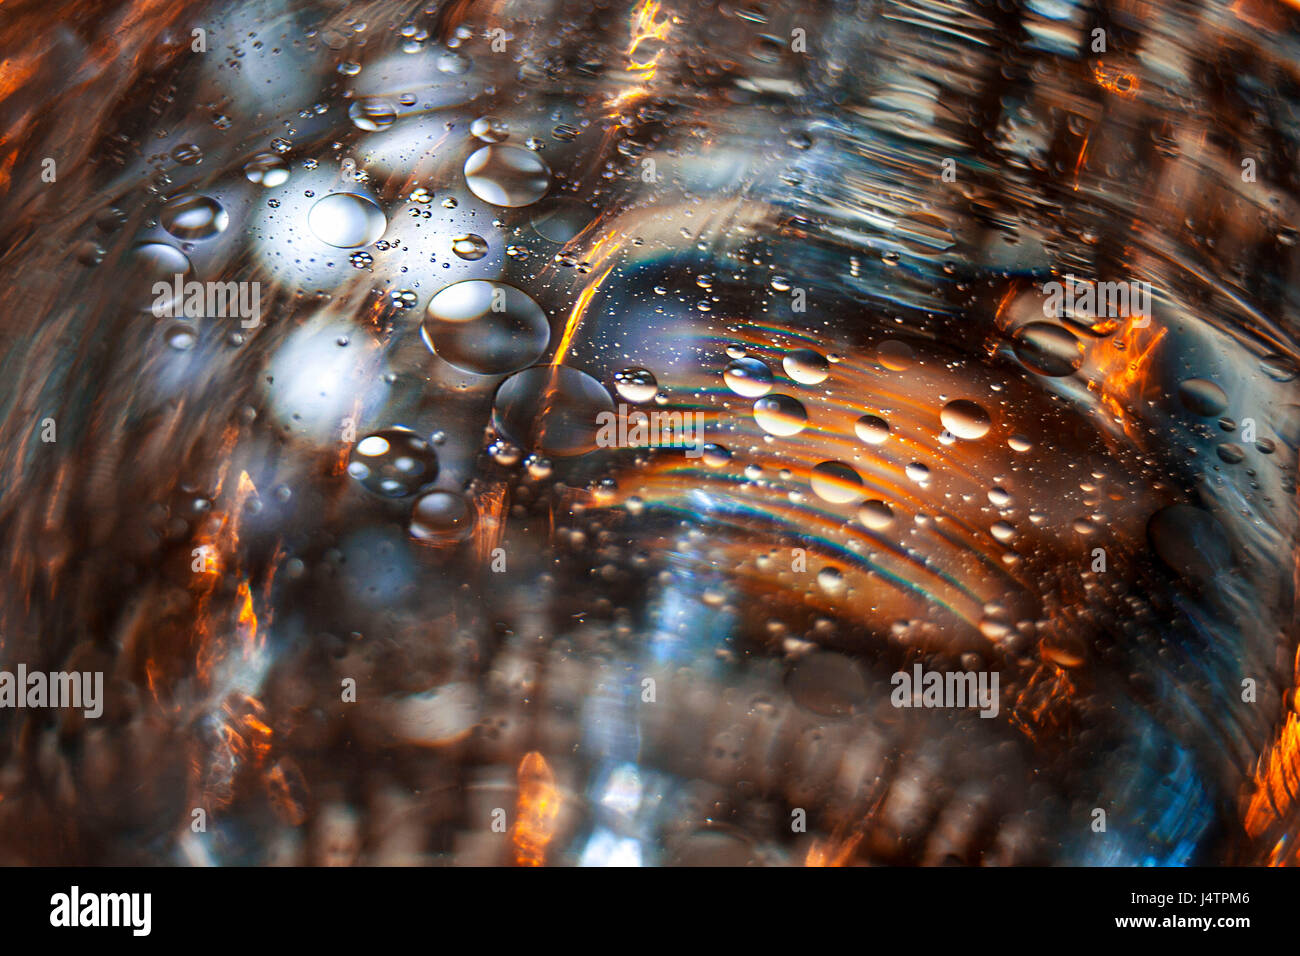 Une image explorer la combinaison de l'eau et les gouttelettes d'huile et de leur interaction avec la lumière colorée. Banque D'Images